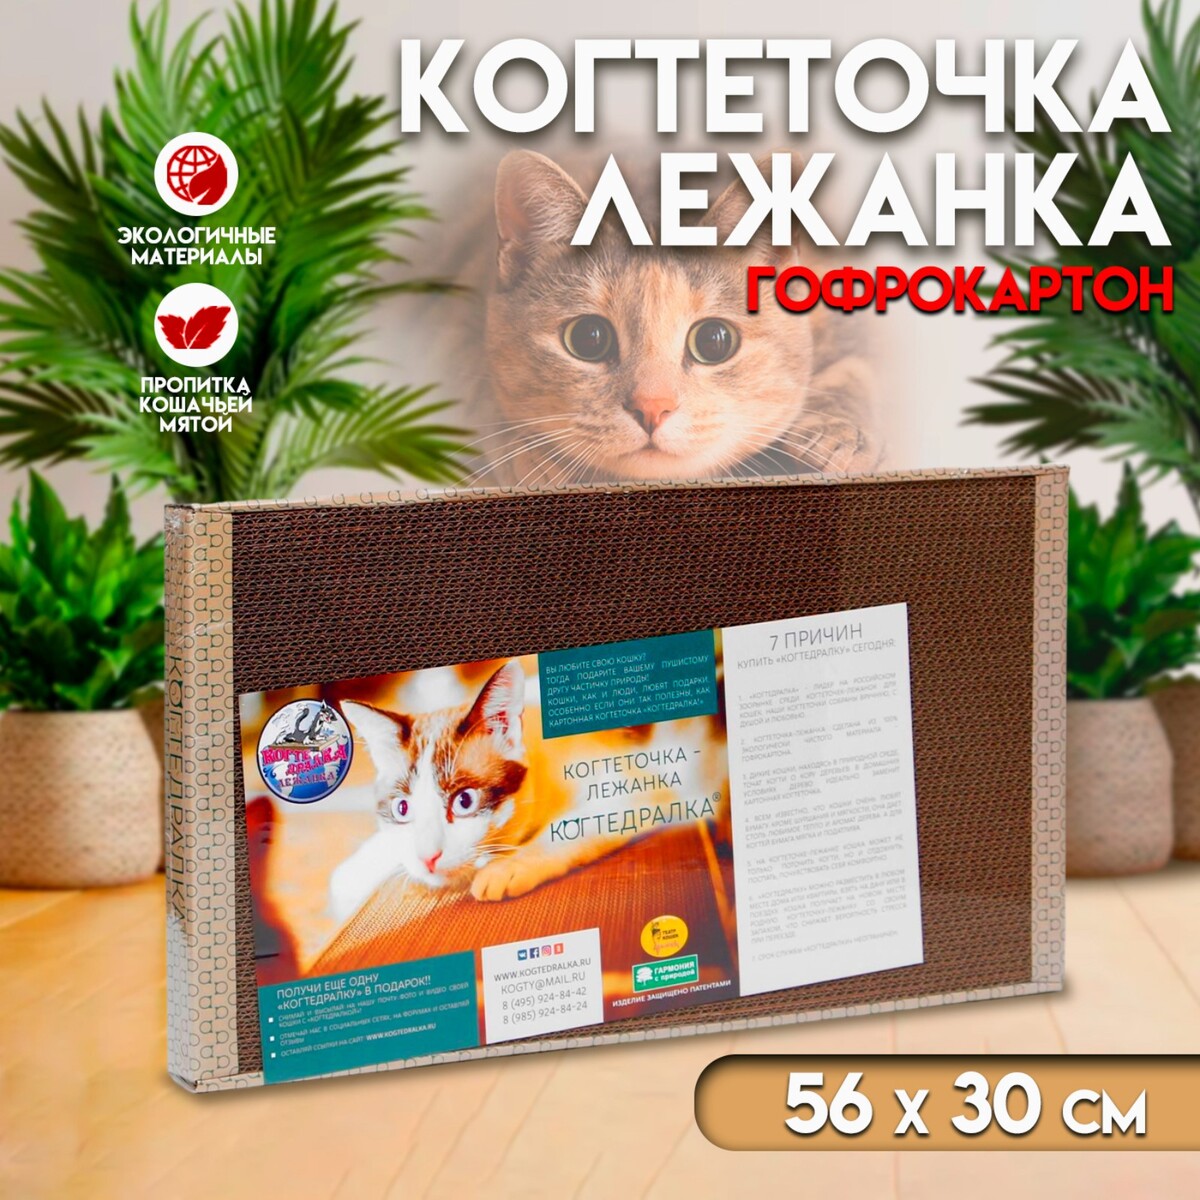 Домашняя когтеточка-лежанка для кошек, 56 × 30 см домашняя когтеточка лежанка для кошек 56 × 30 см